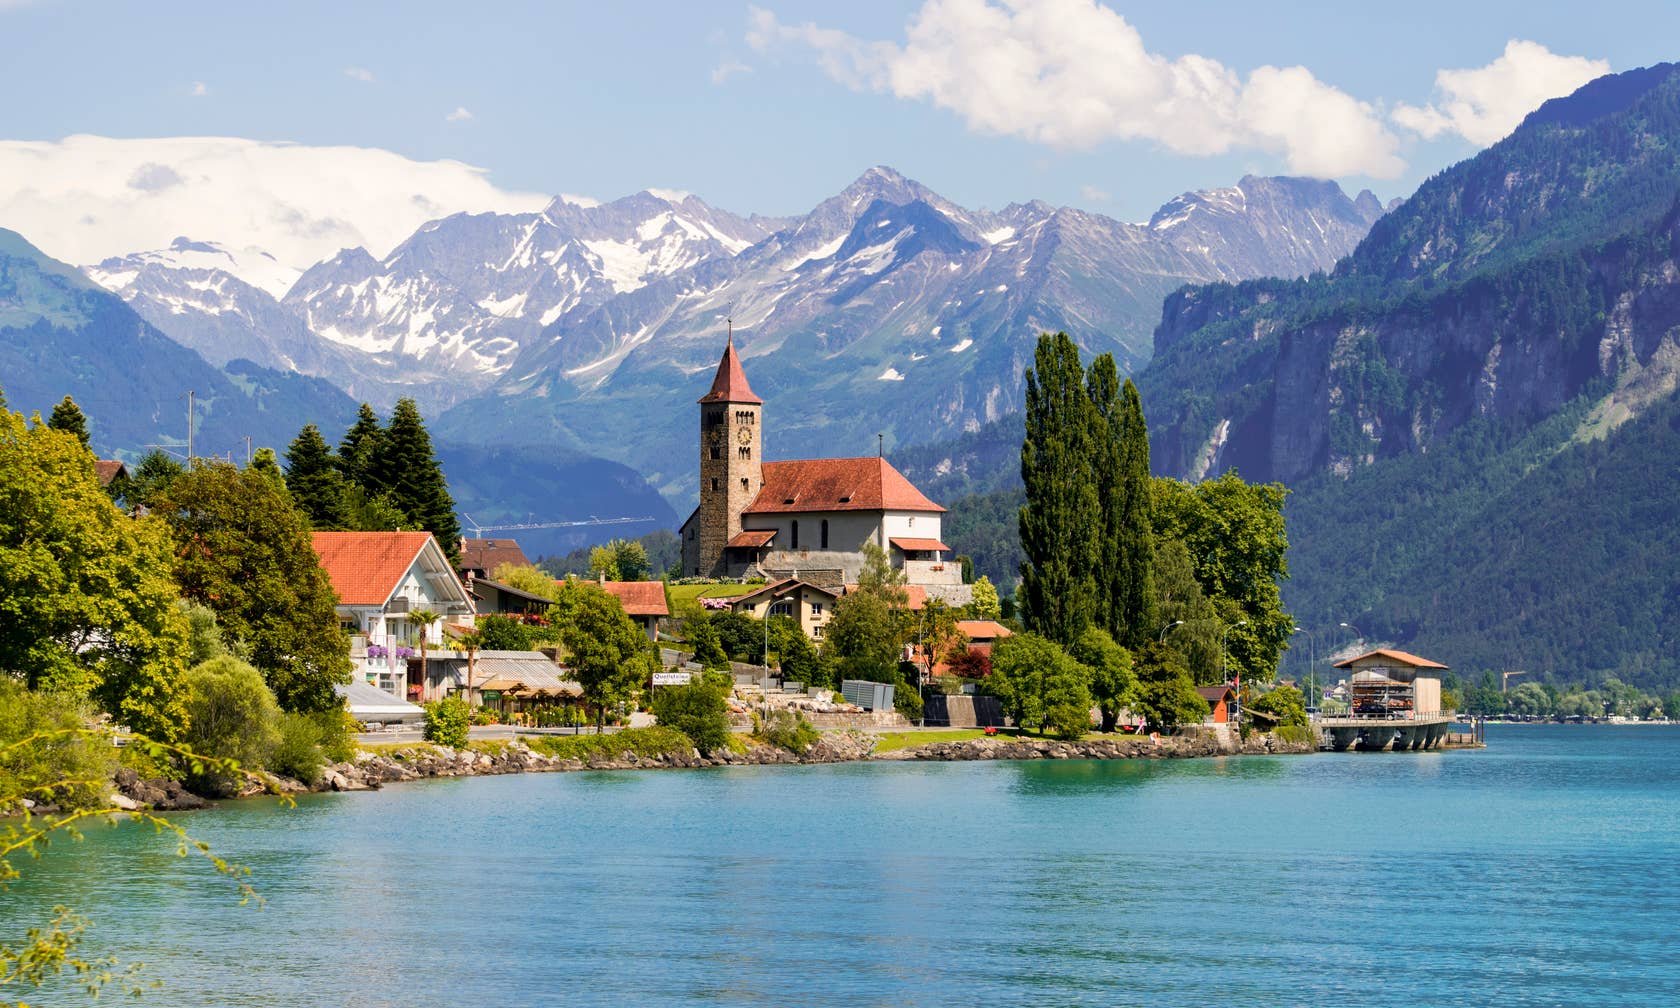 Holiday rentals in Switzerland